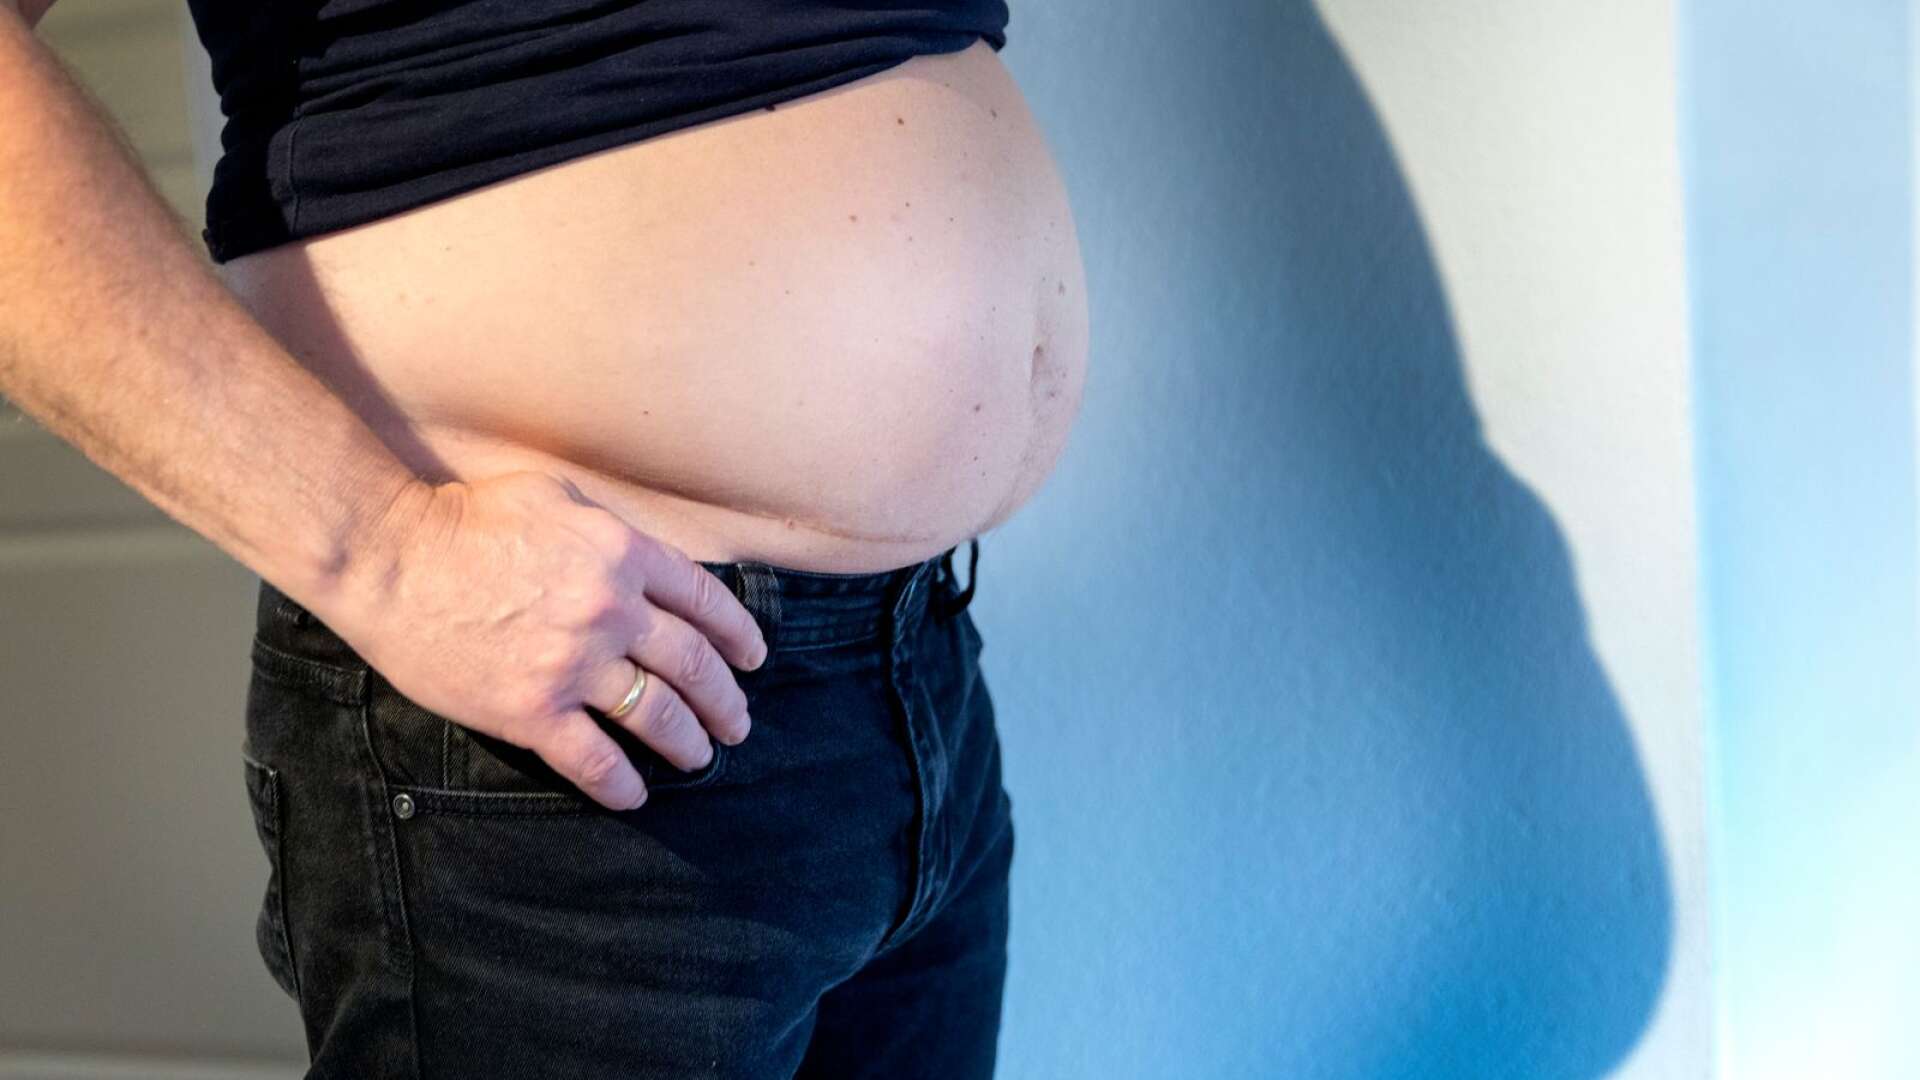 Fetma är en av de största orsakerna till förlorade friska levnadsår. Situationen i Sverige är förödande. Sedan 1980-talet har andelen överviktiga och feta mer än dubblerats, skriver Ulrika Ennen och Kristina Ahlin.